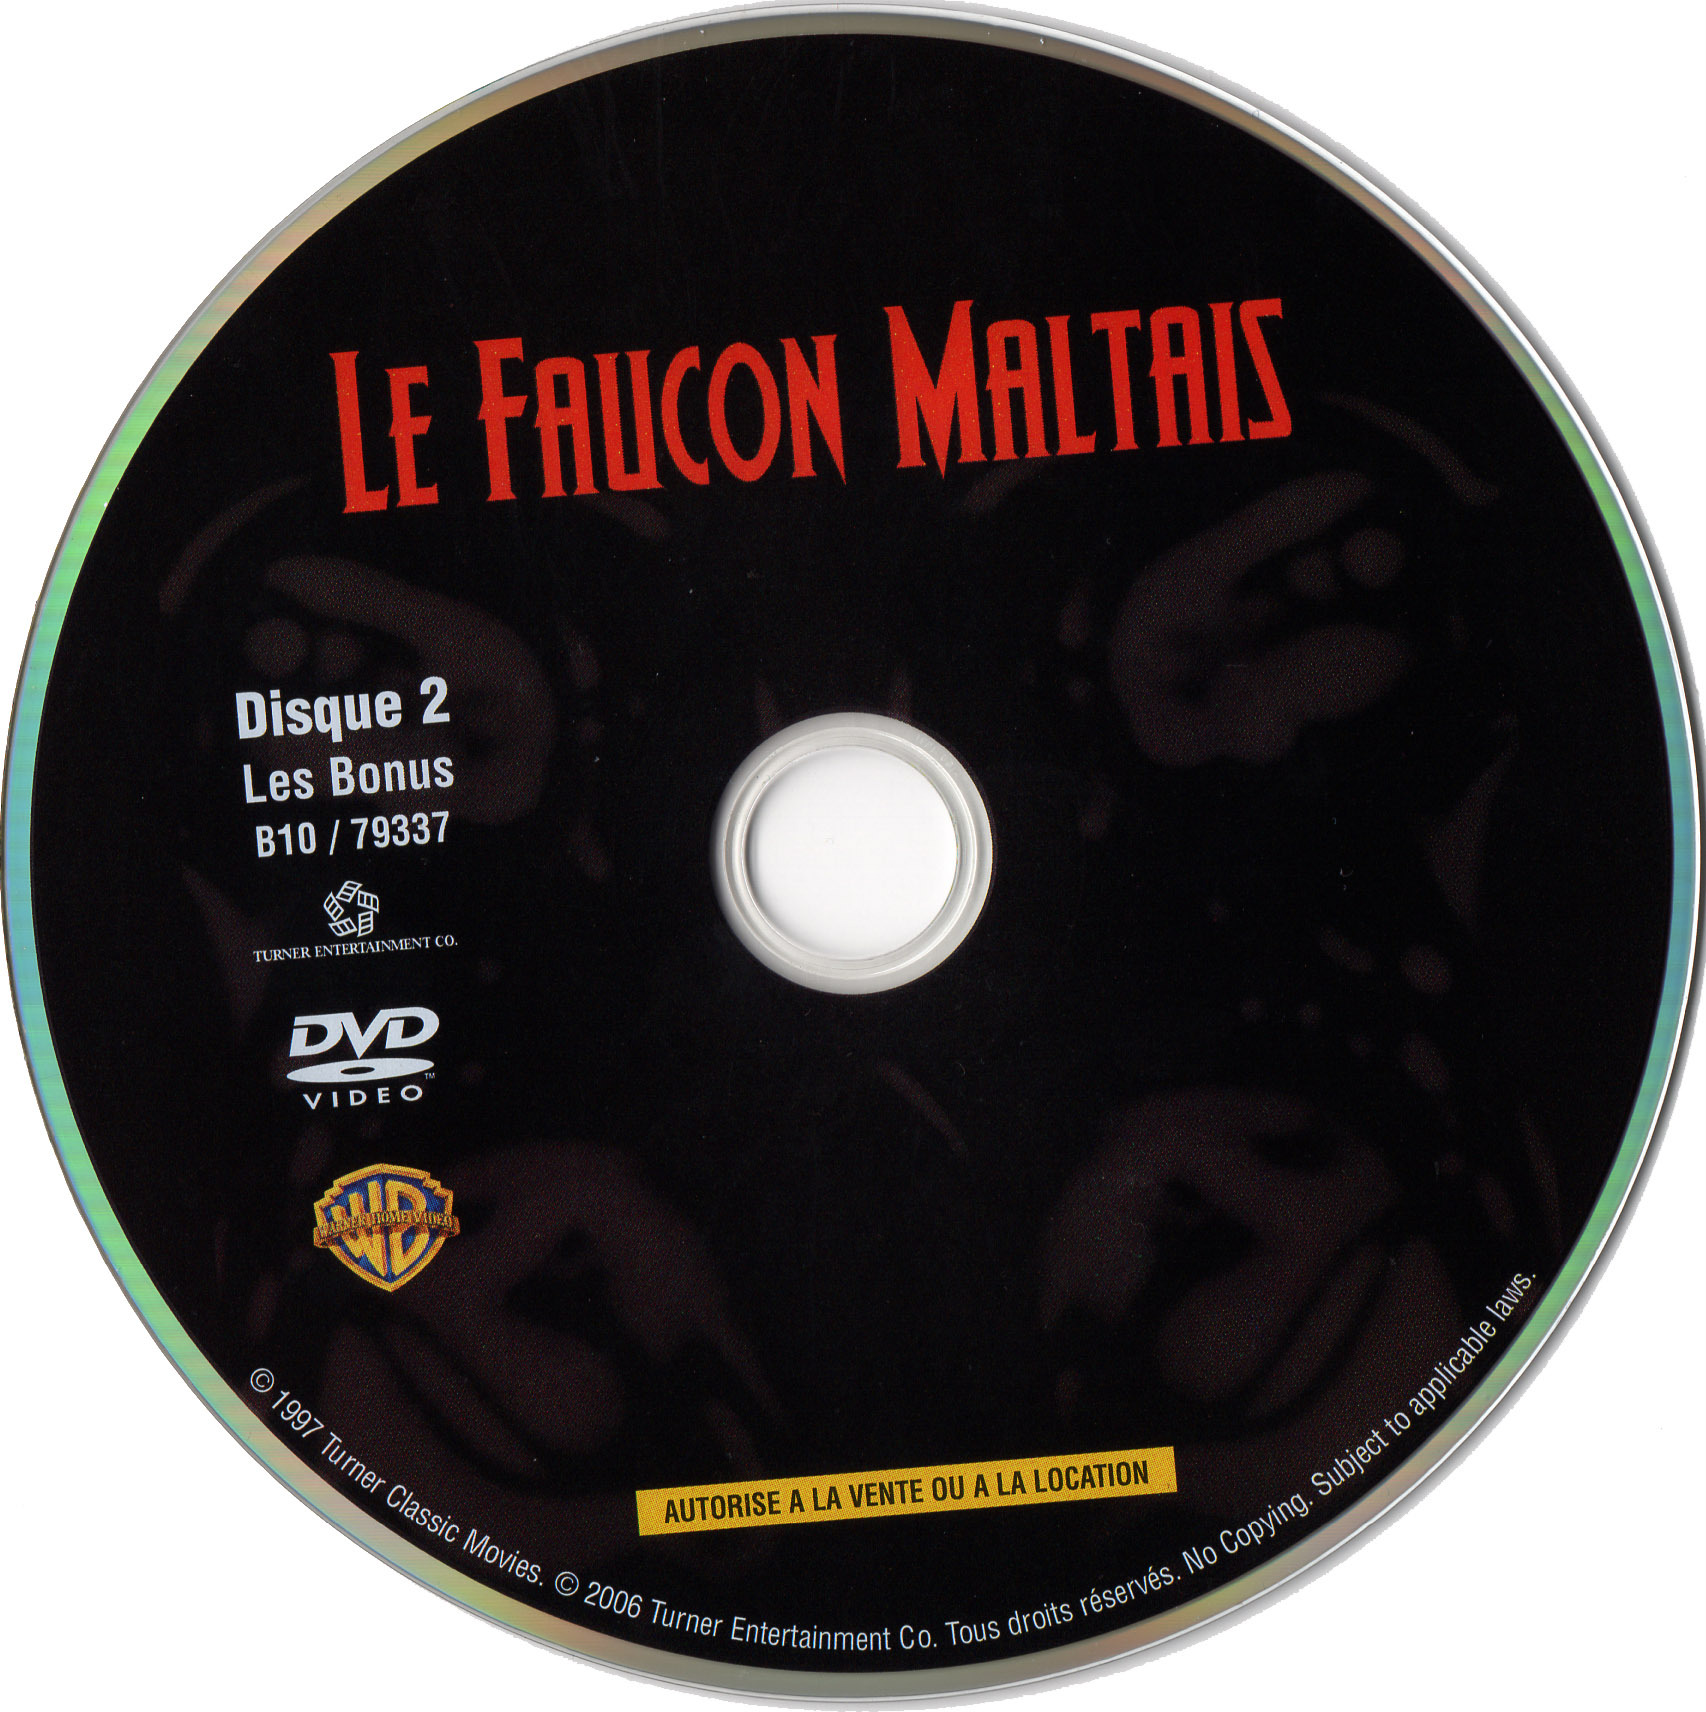 Le Faucon Maltais DISC 2